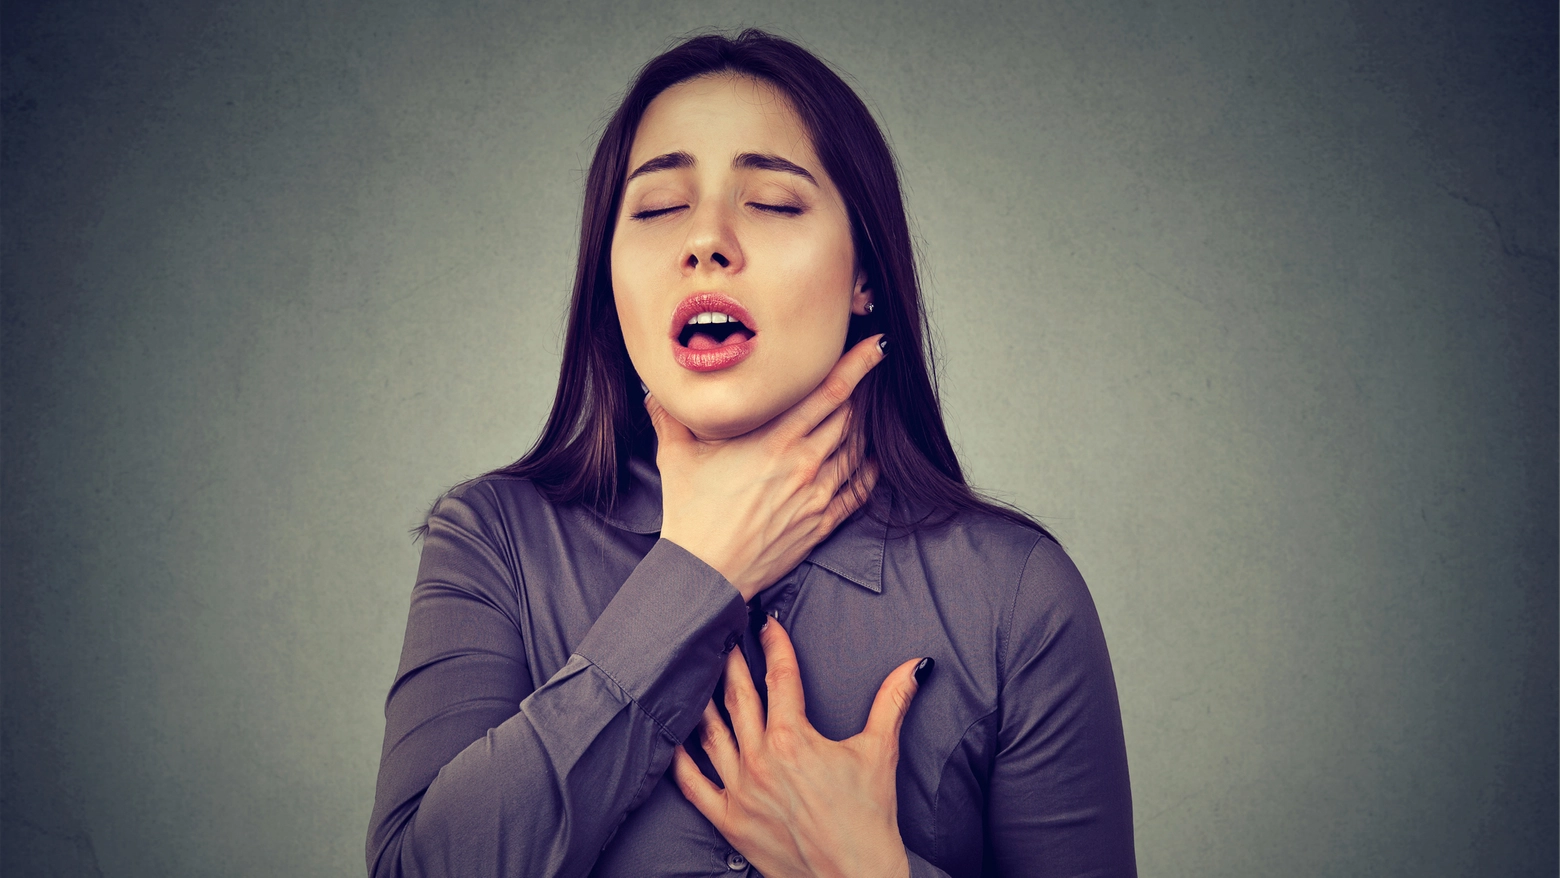 I sintomi dello choc anafilattico: gonfiore di labbra-lingua-ugola, che poi si trasformano in problemi respiratori